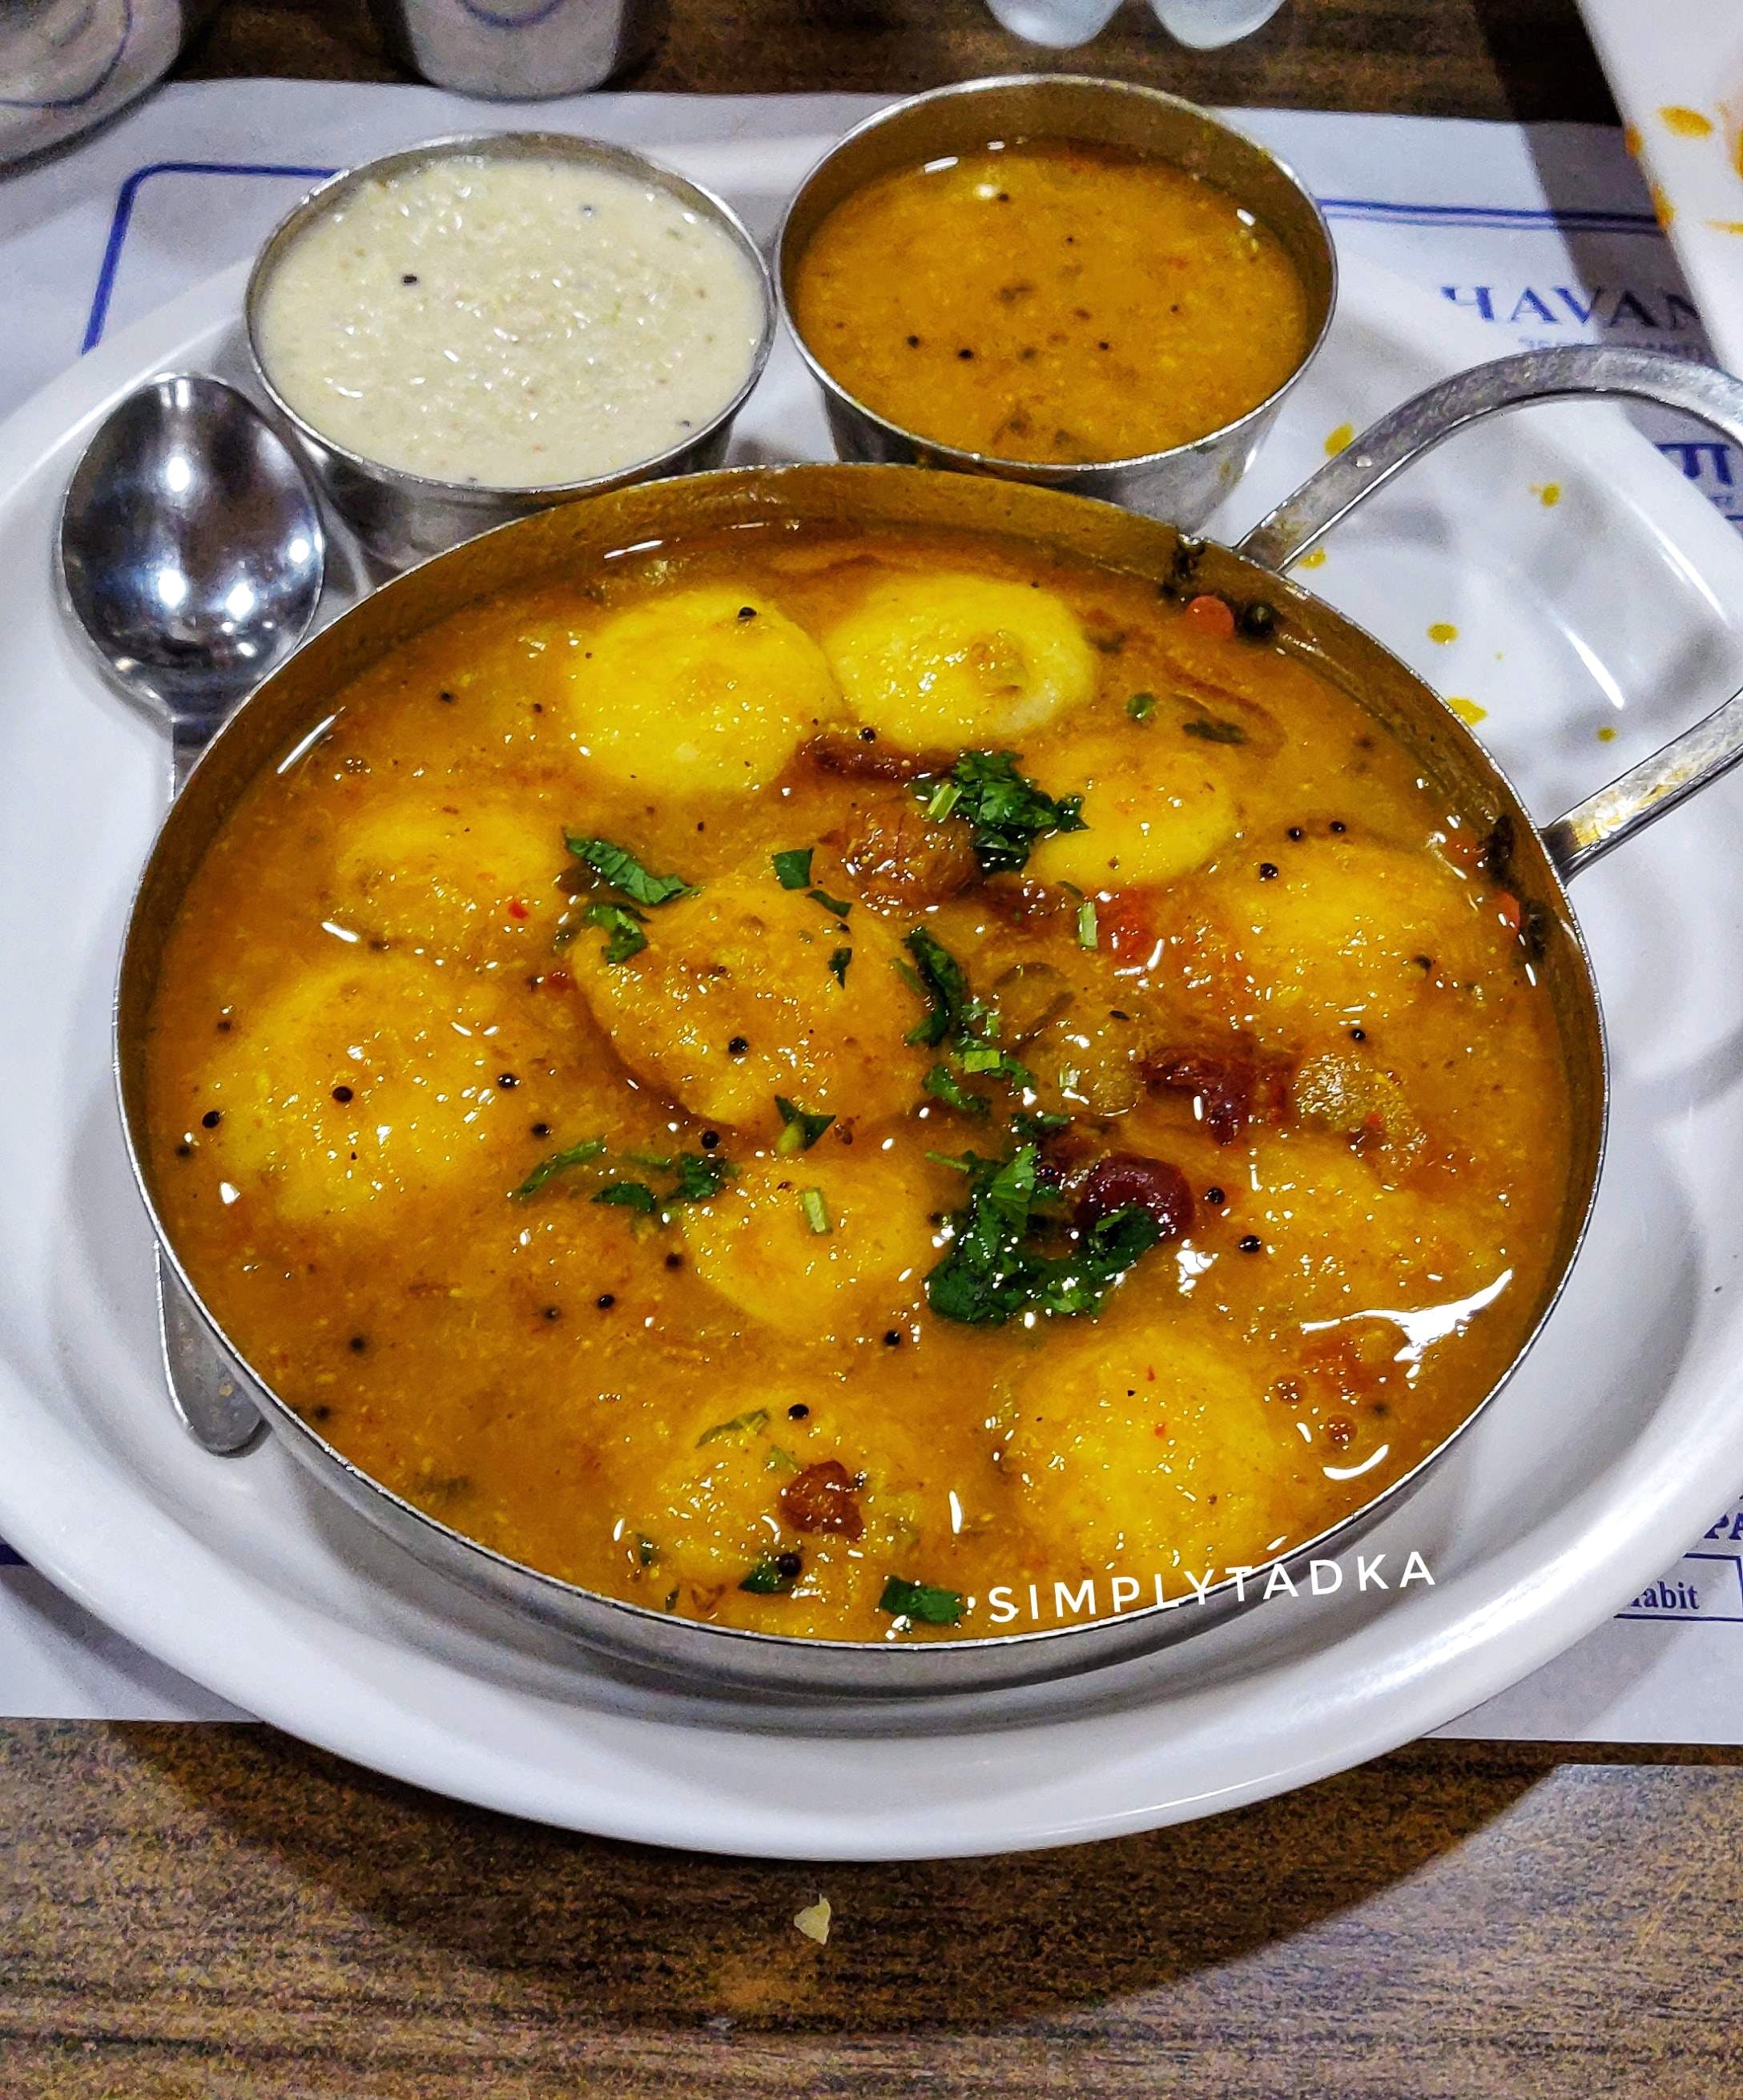 Dish,Food,Cuisine,Ingredient,Curry,Gravy,Produce,Dal,Indian cuisine,Moqueca